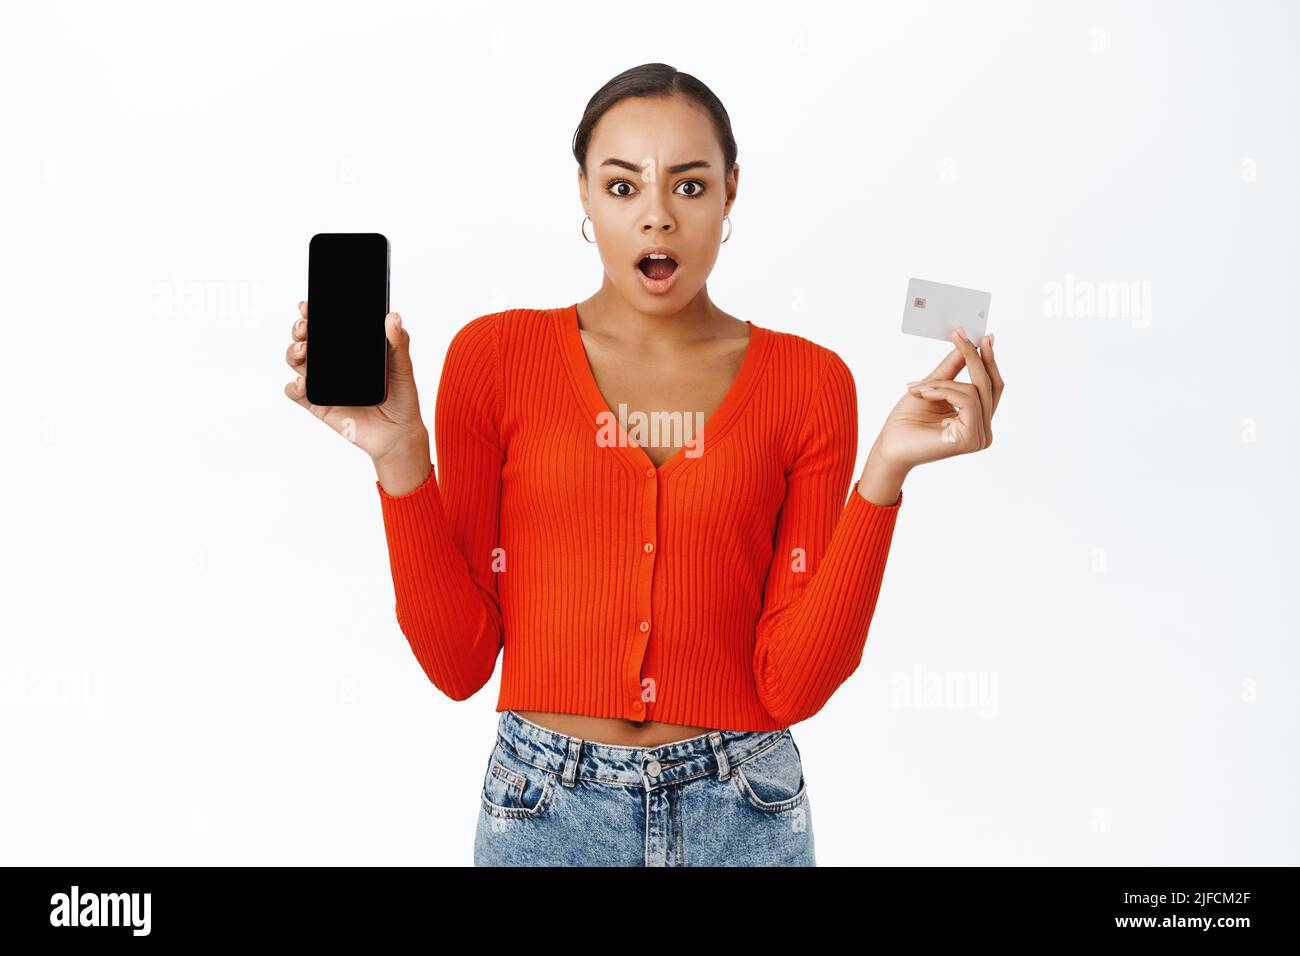 Une femme frustrée montre son téléphone mobile et sa carte de crédit, semble choquée, en attente d'explication, debout sur fond blanc Banque D'Images